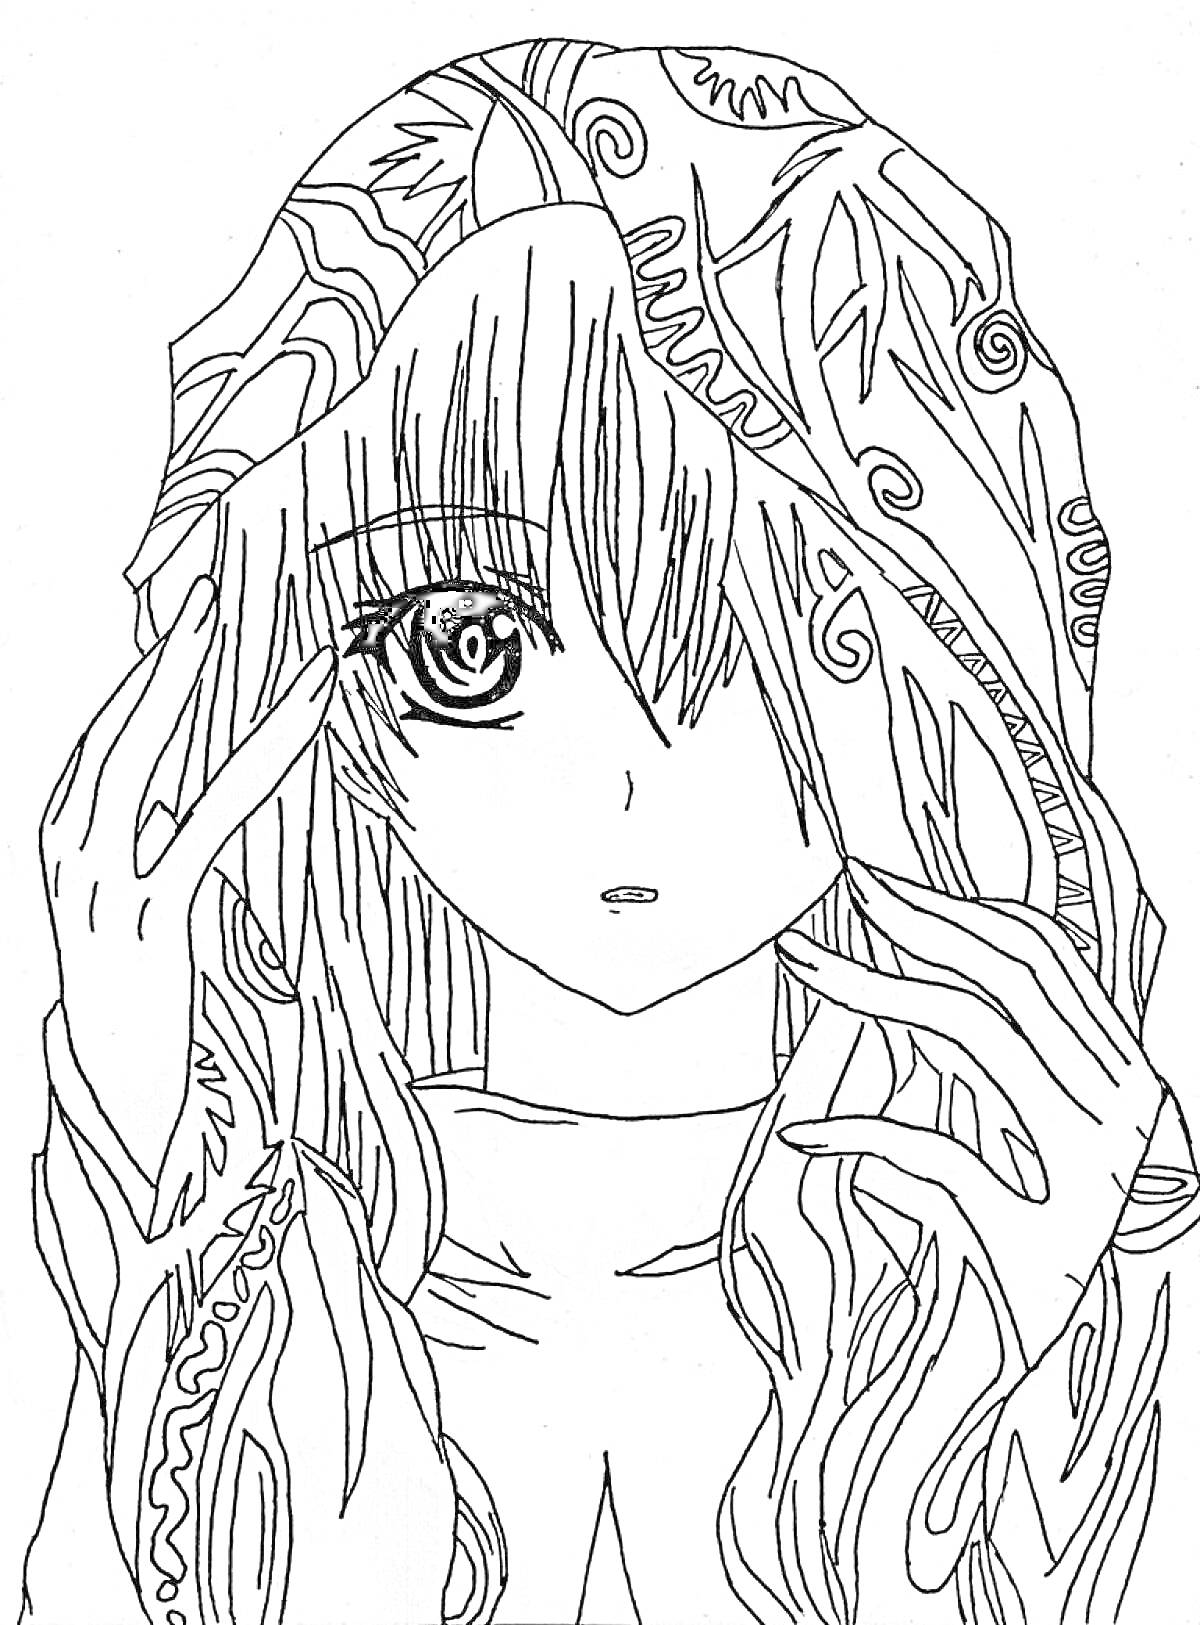 Девушка аниме с закрытым рукой глазом и длинными волосами в капюшоне с узорами